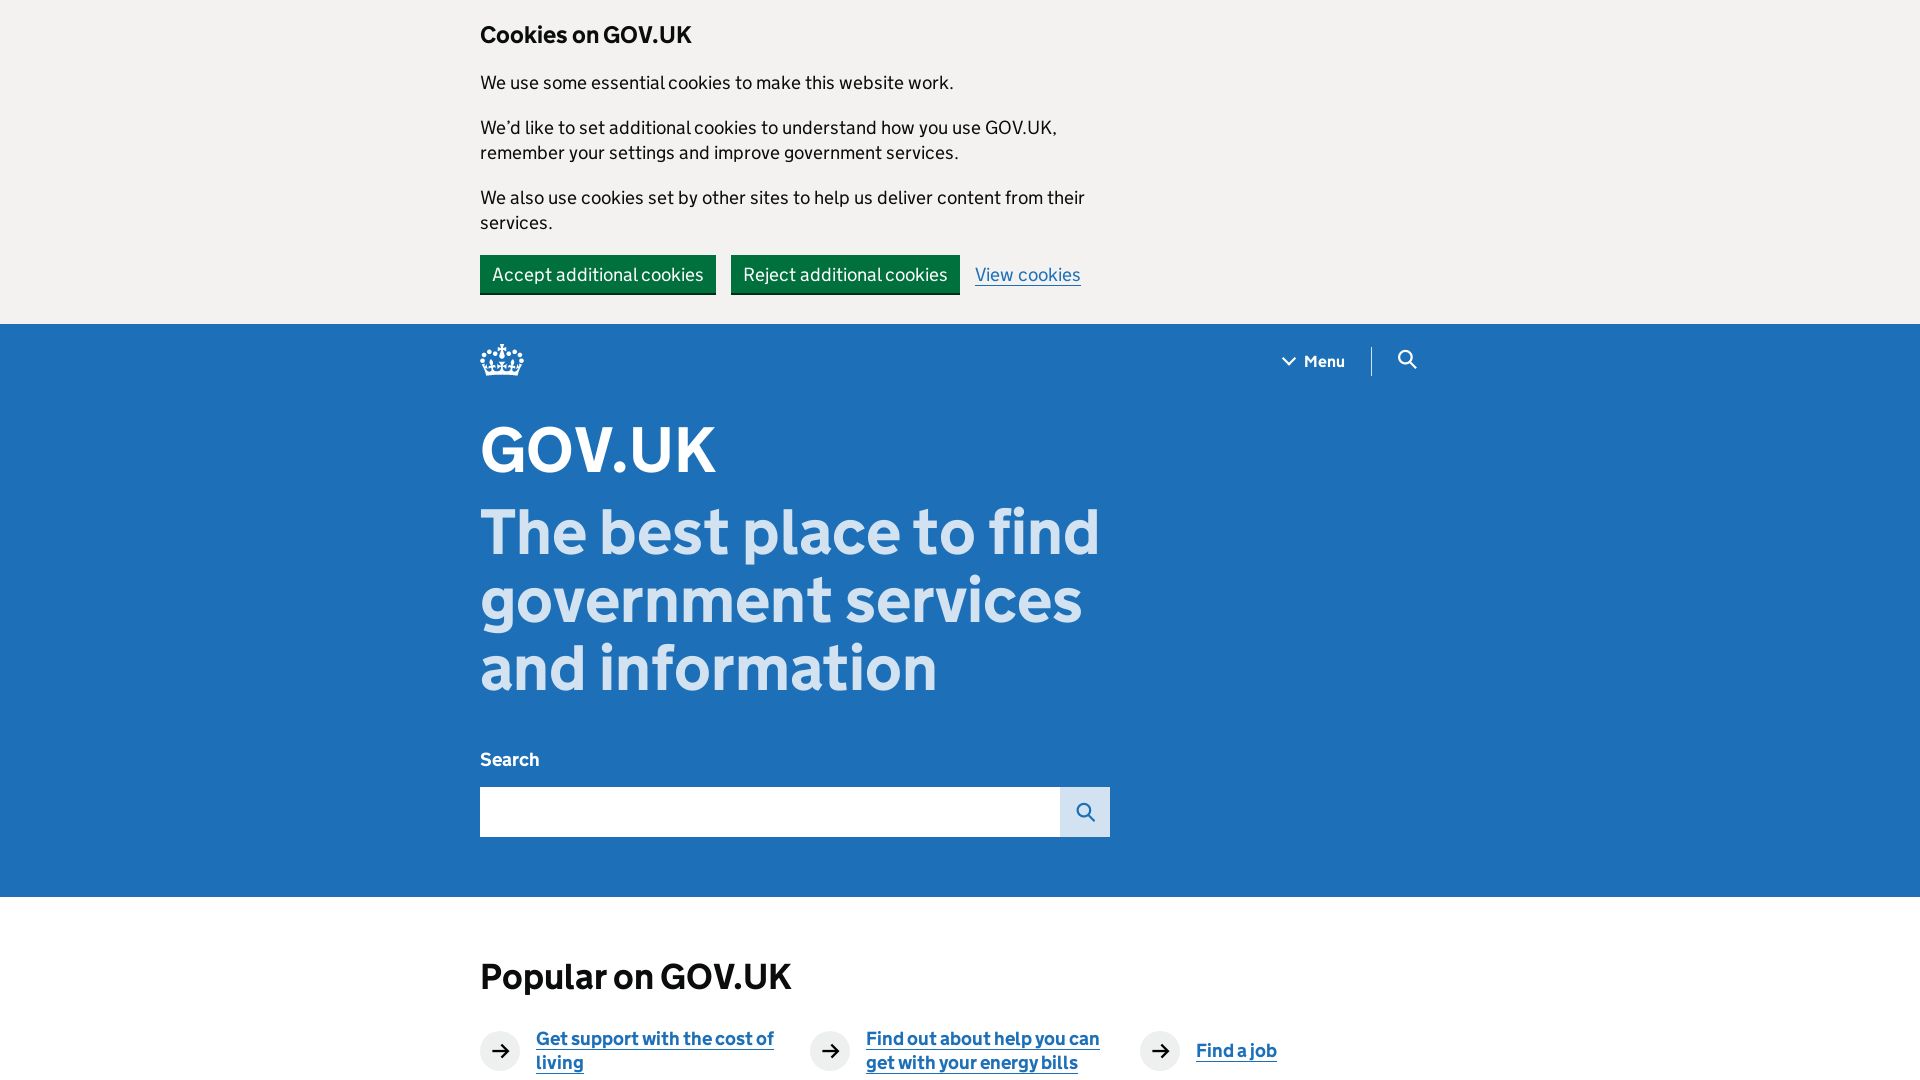 Website status gov.uk is   ONLINE